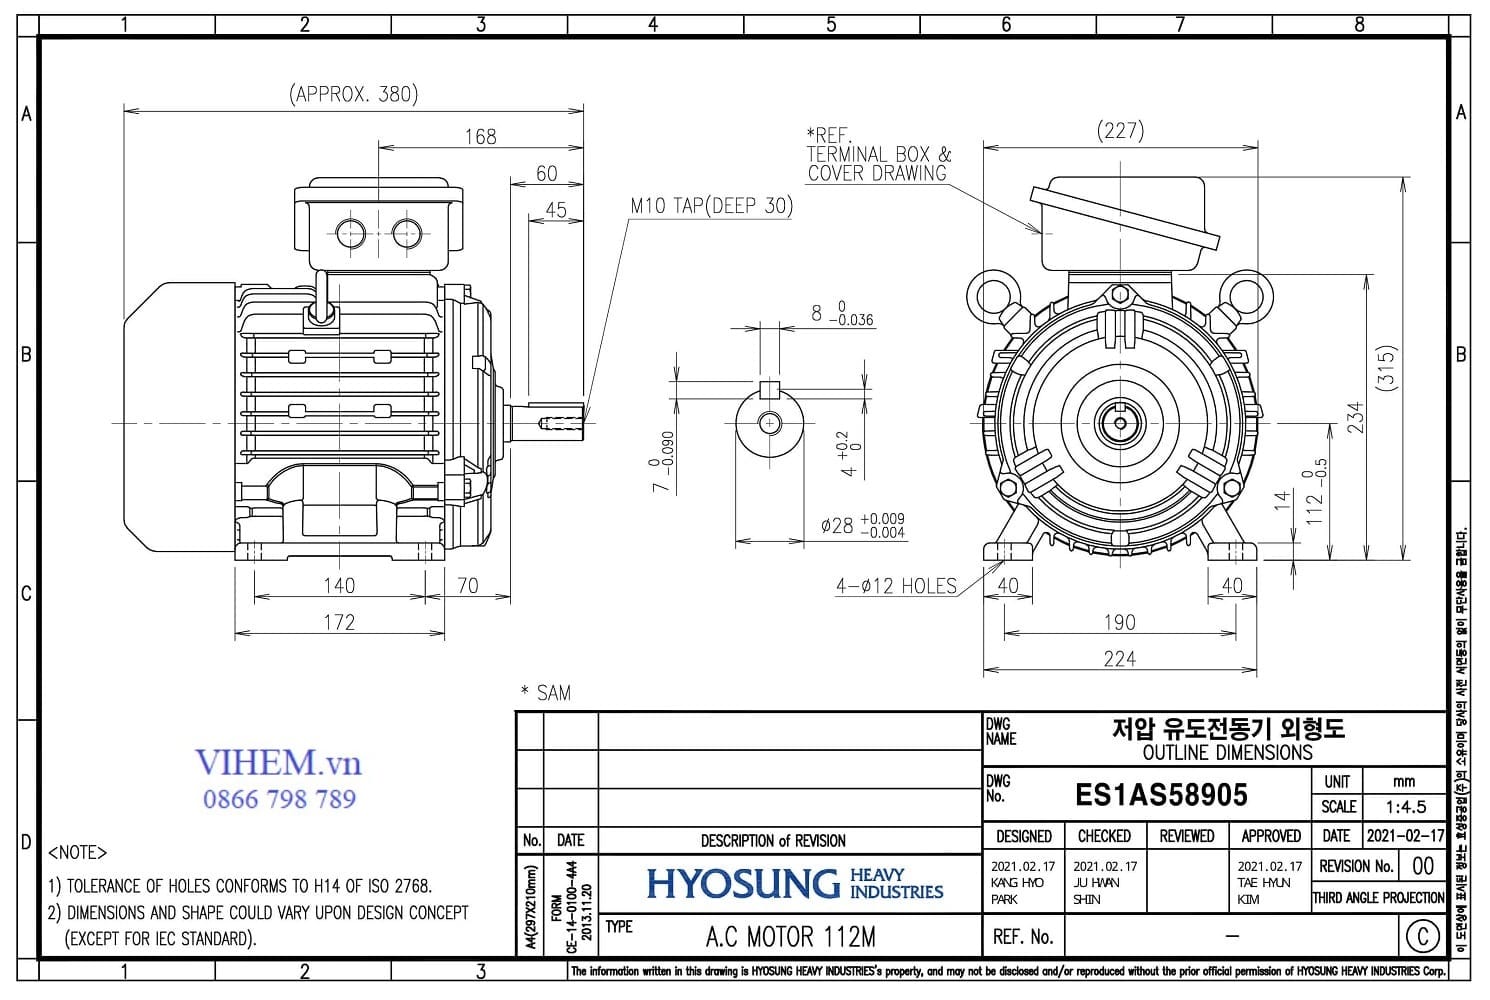 thông số kỹ thuật & kích thước lắp đặt Motor Hyosung 2.2kW - 6P (tốc độ 1000 rpm)